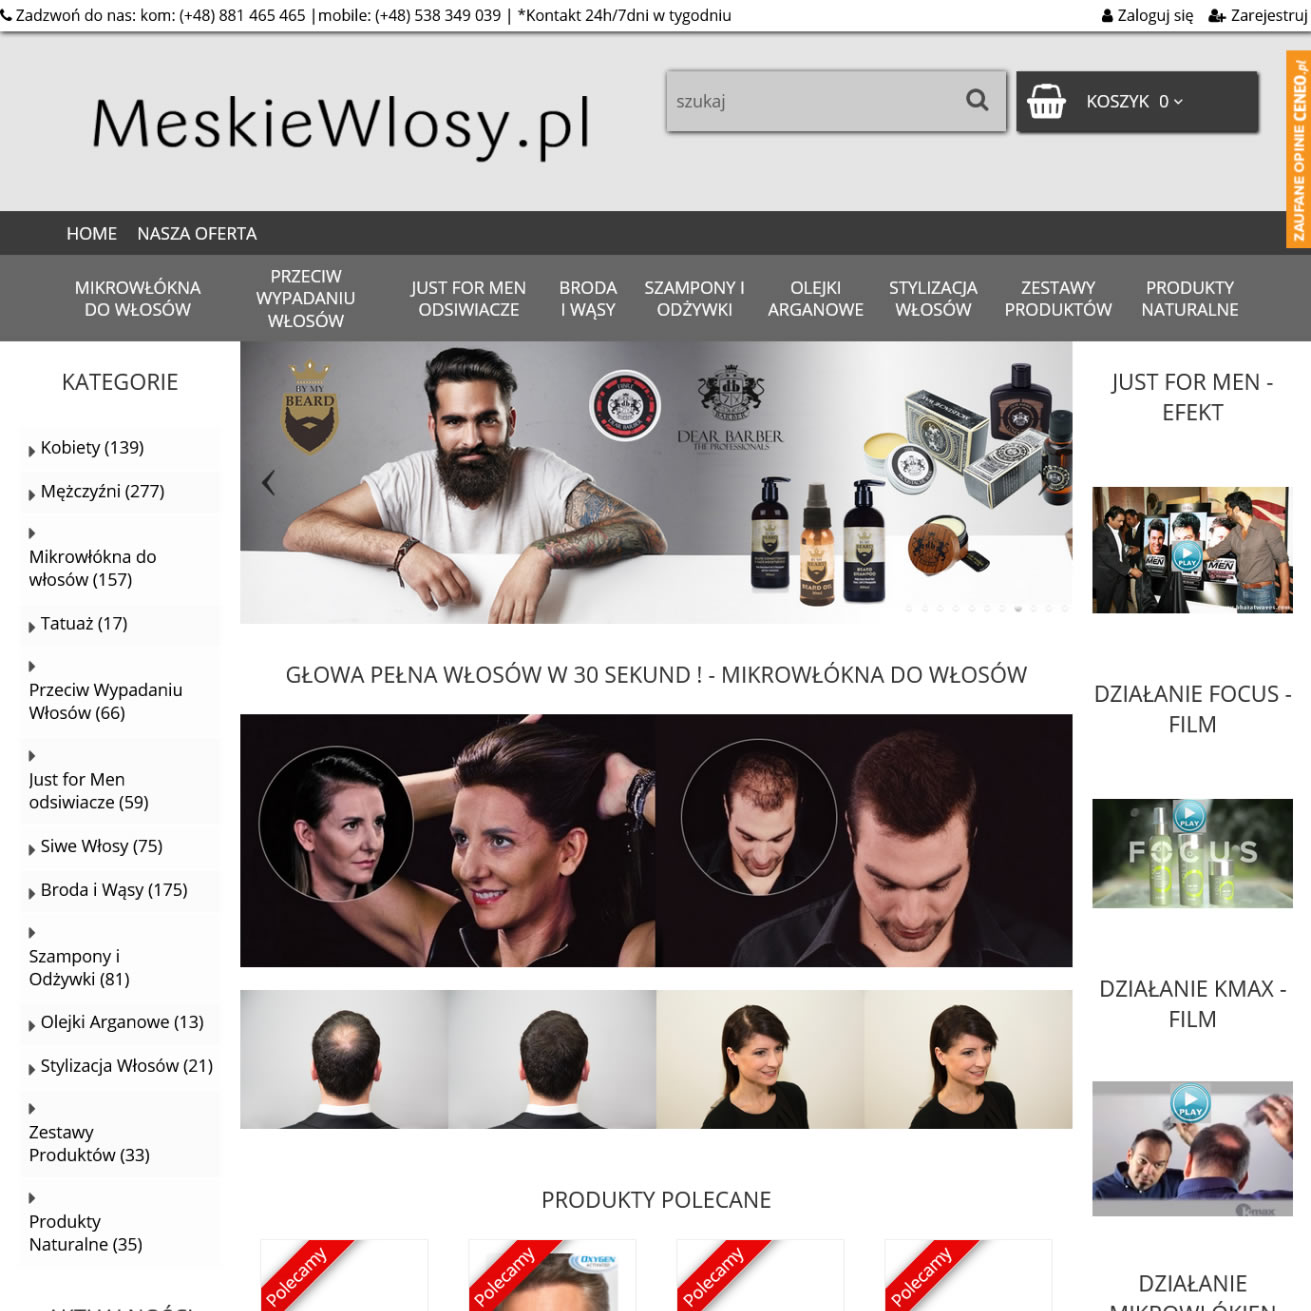 meskiewlosy.pl main image